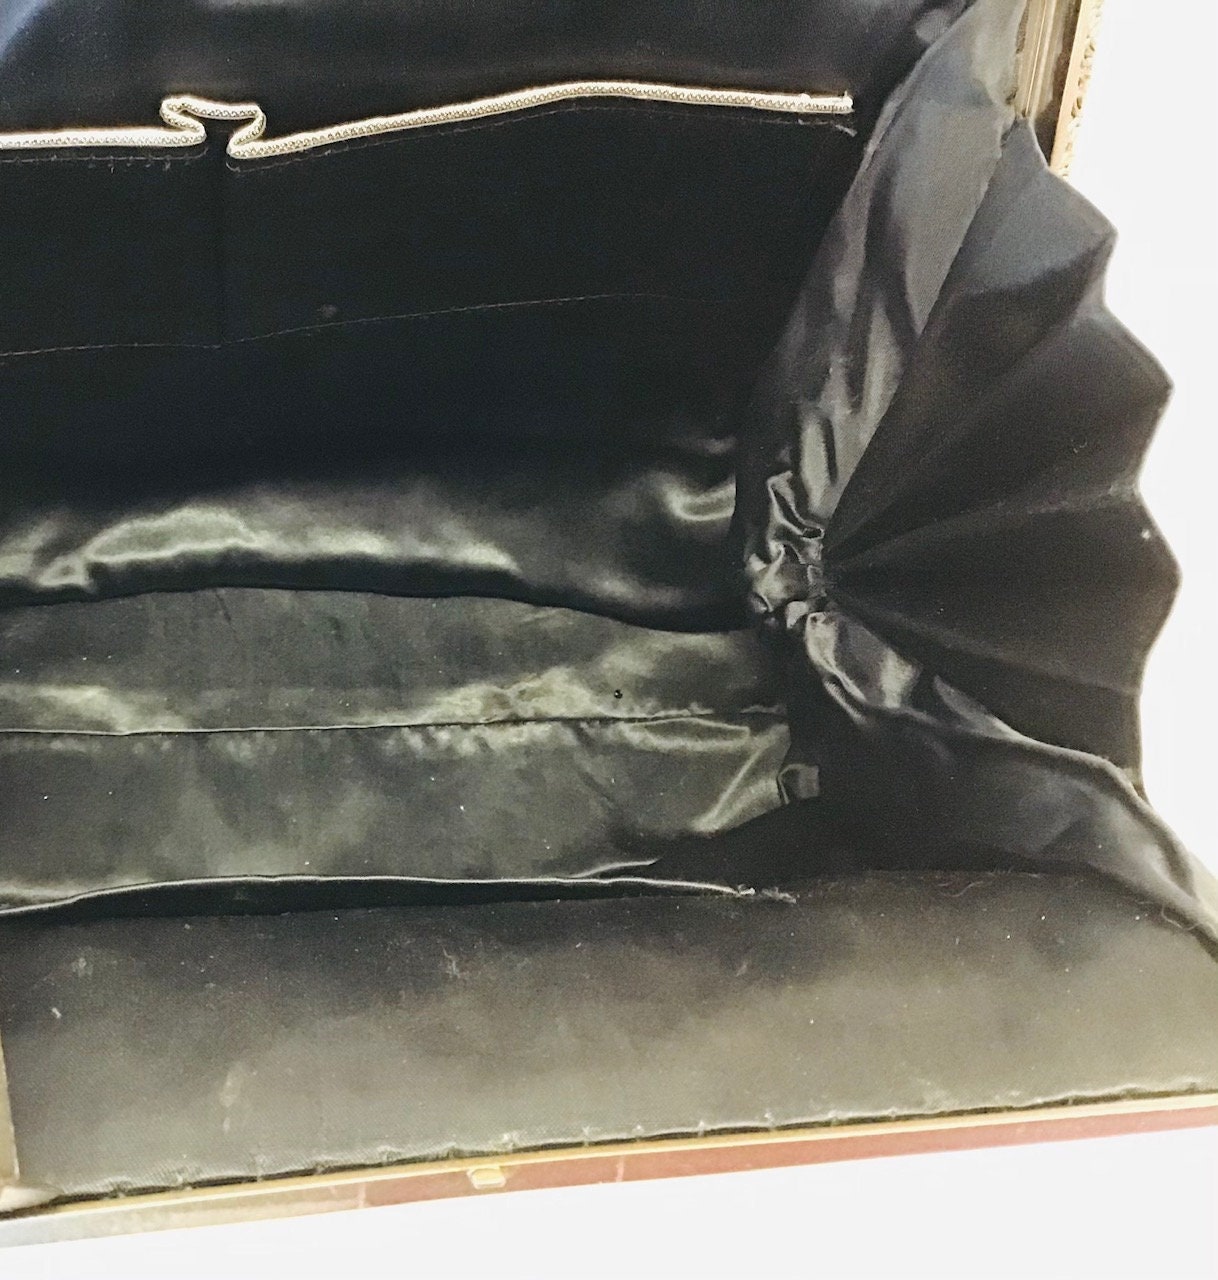 ☻ Black Beaded Vintage Top Handle Bag